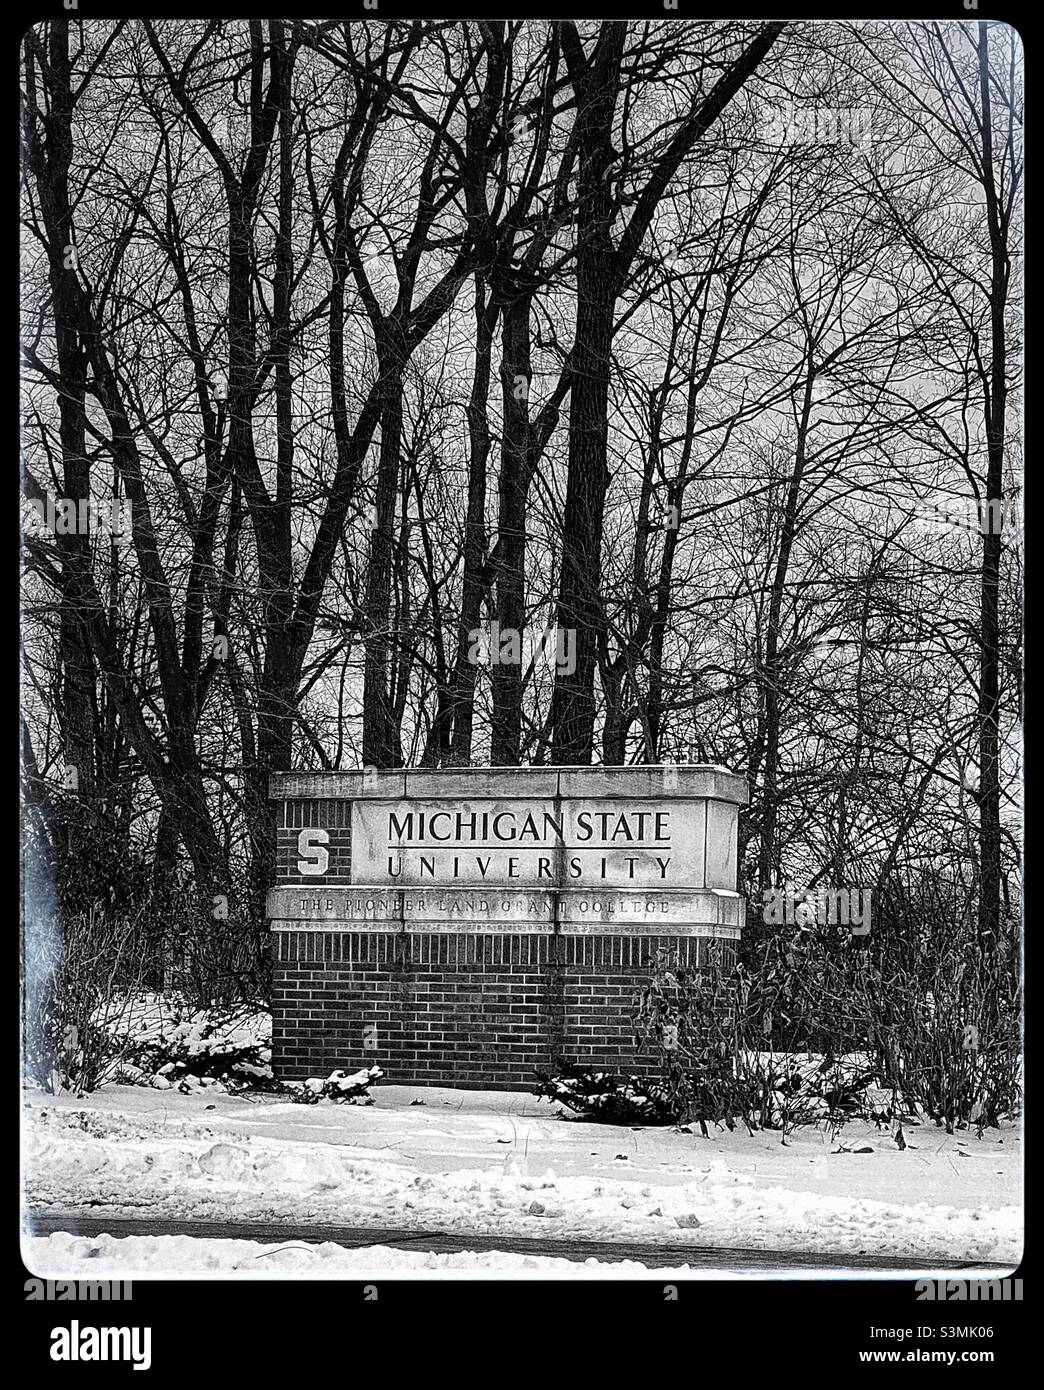 Michigan State University brick wall Stock Photo